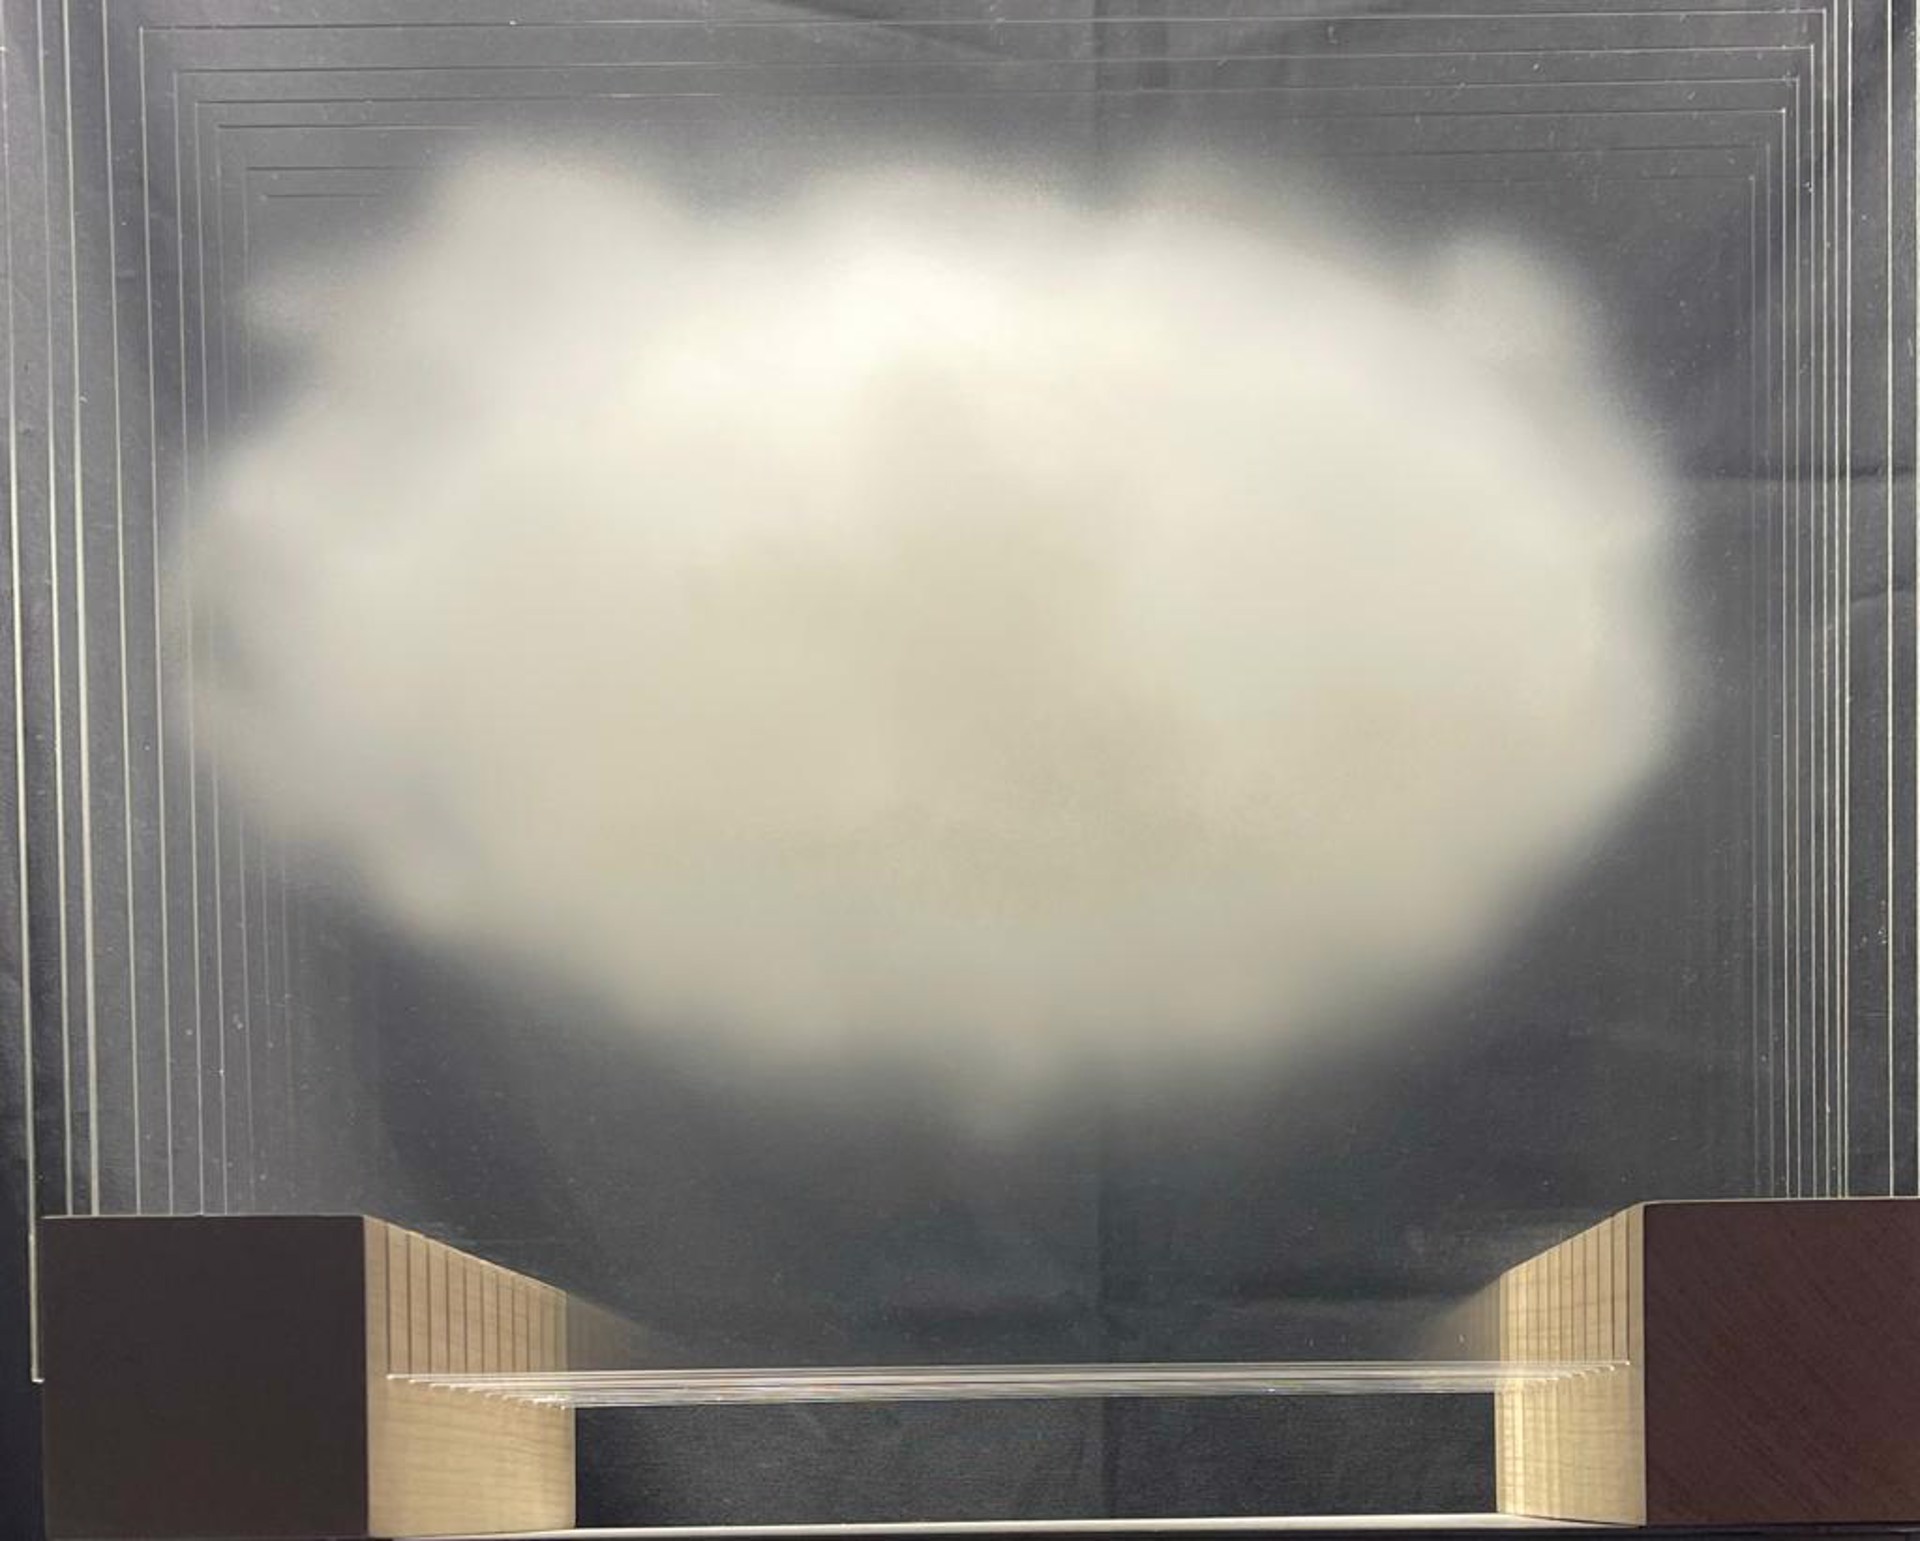 Cloud #1 by Rémy de Haenen